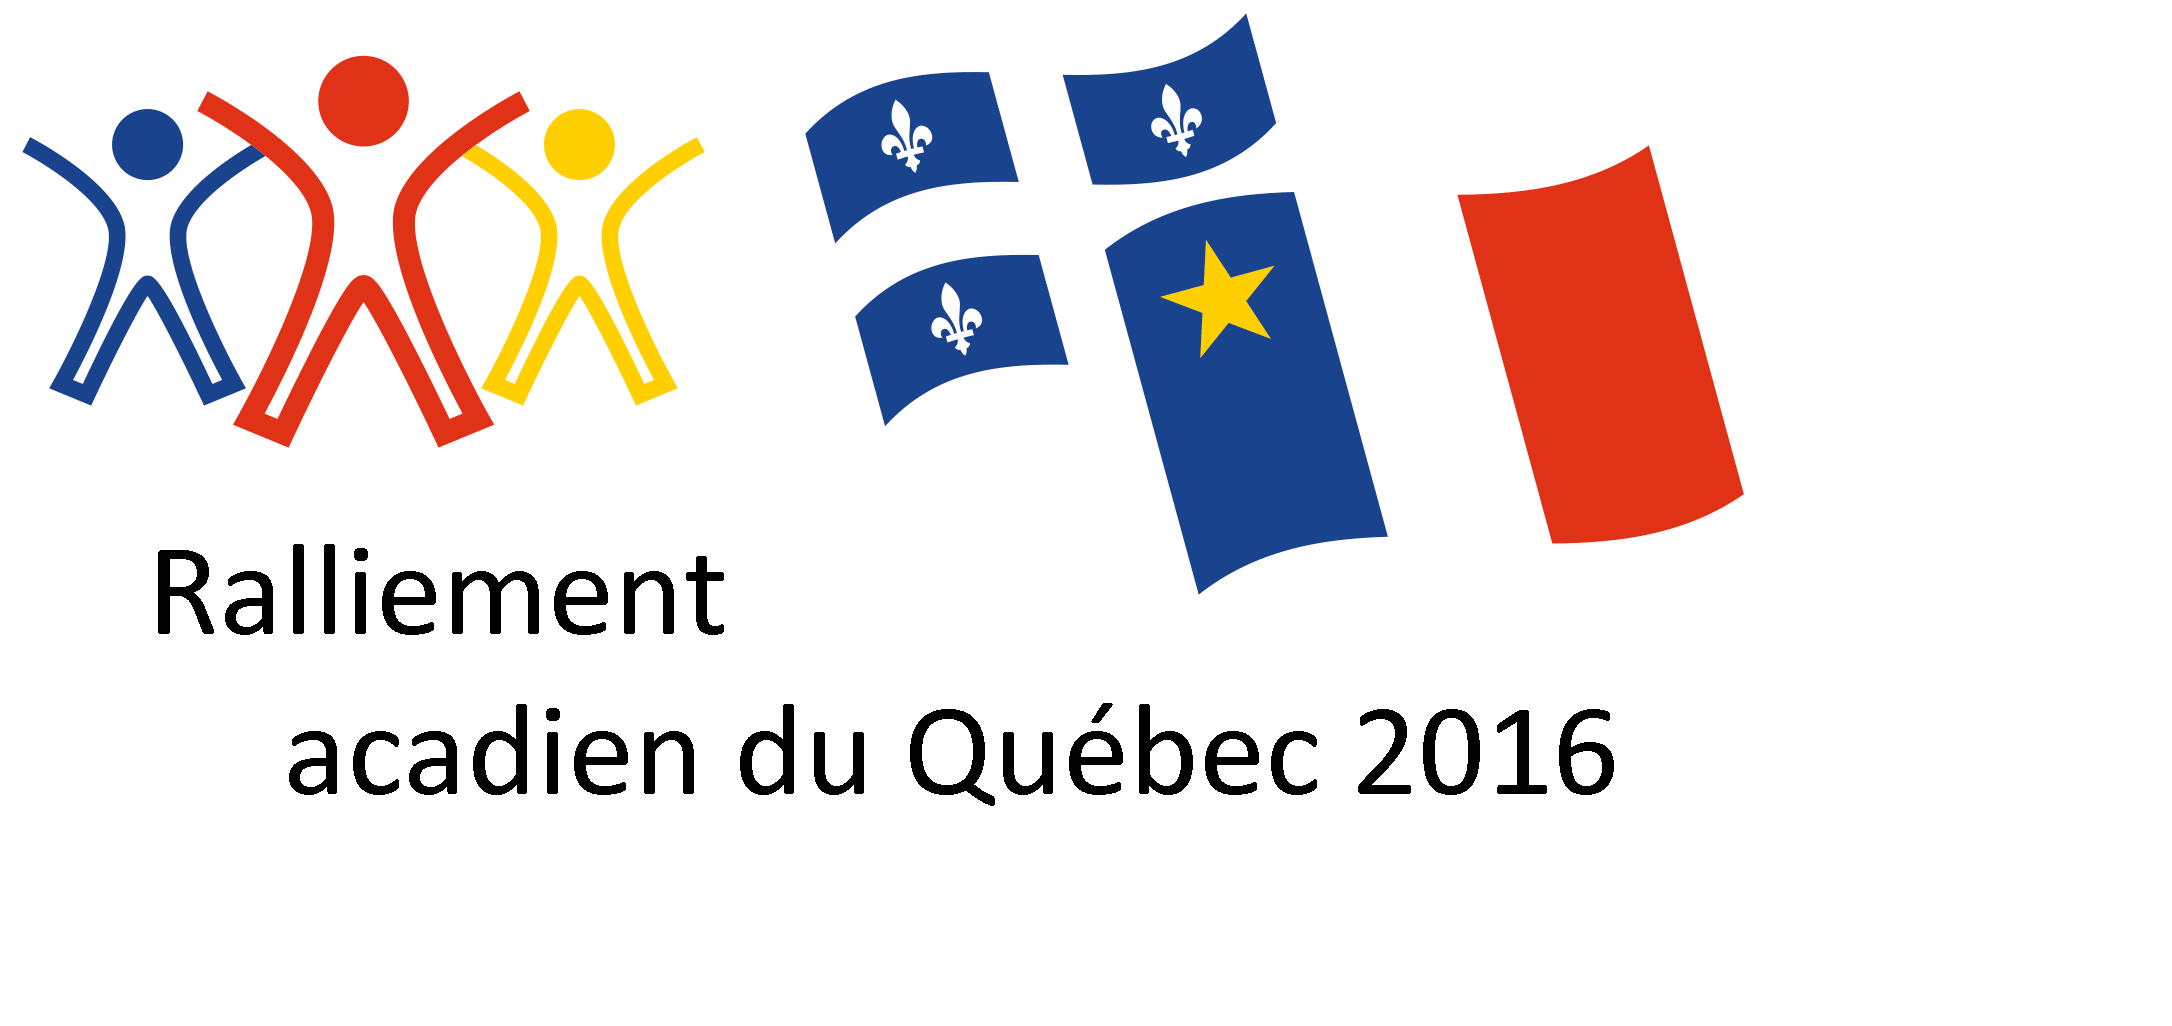 Ralliement acadien du Québec 2016